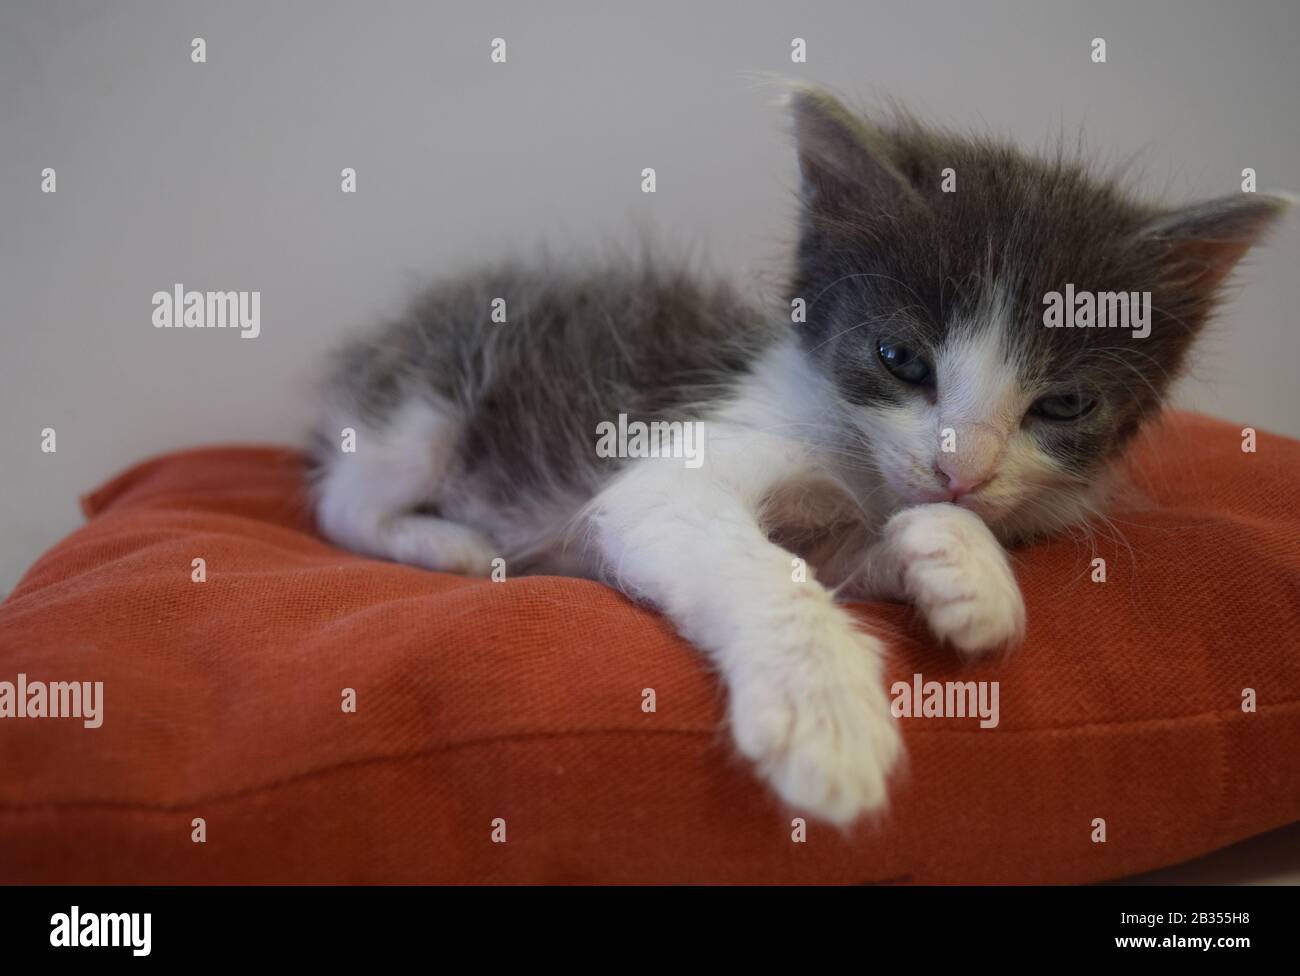 Gato gris y blanco recién nacido Stock Photo